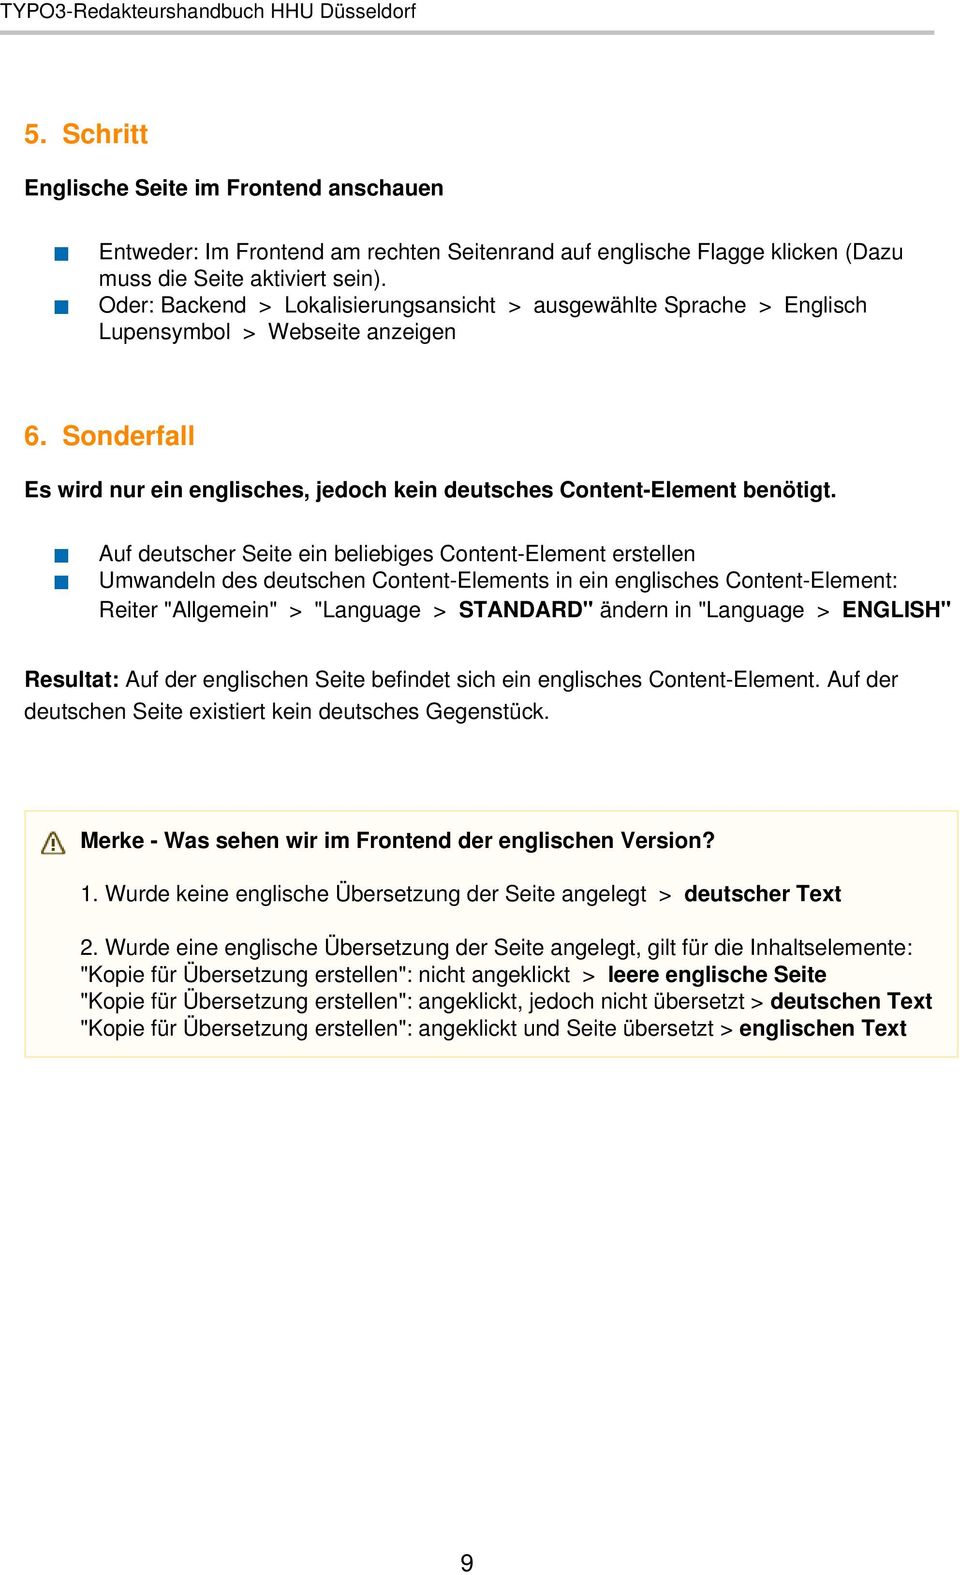 Auf deutscher Seite ein beliebiges Content-Element erstellen Umwandeln des deutschen Content-Elements in ein englisches Content-Element: Reiter "Allgemein" > "Language > STANDARD" ändern in "Language